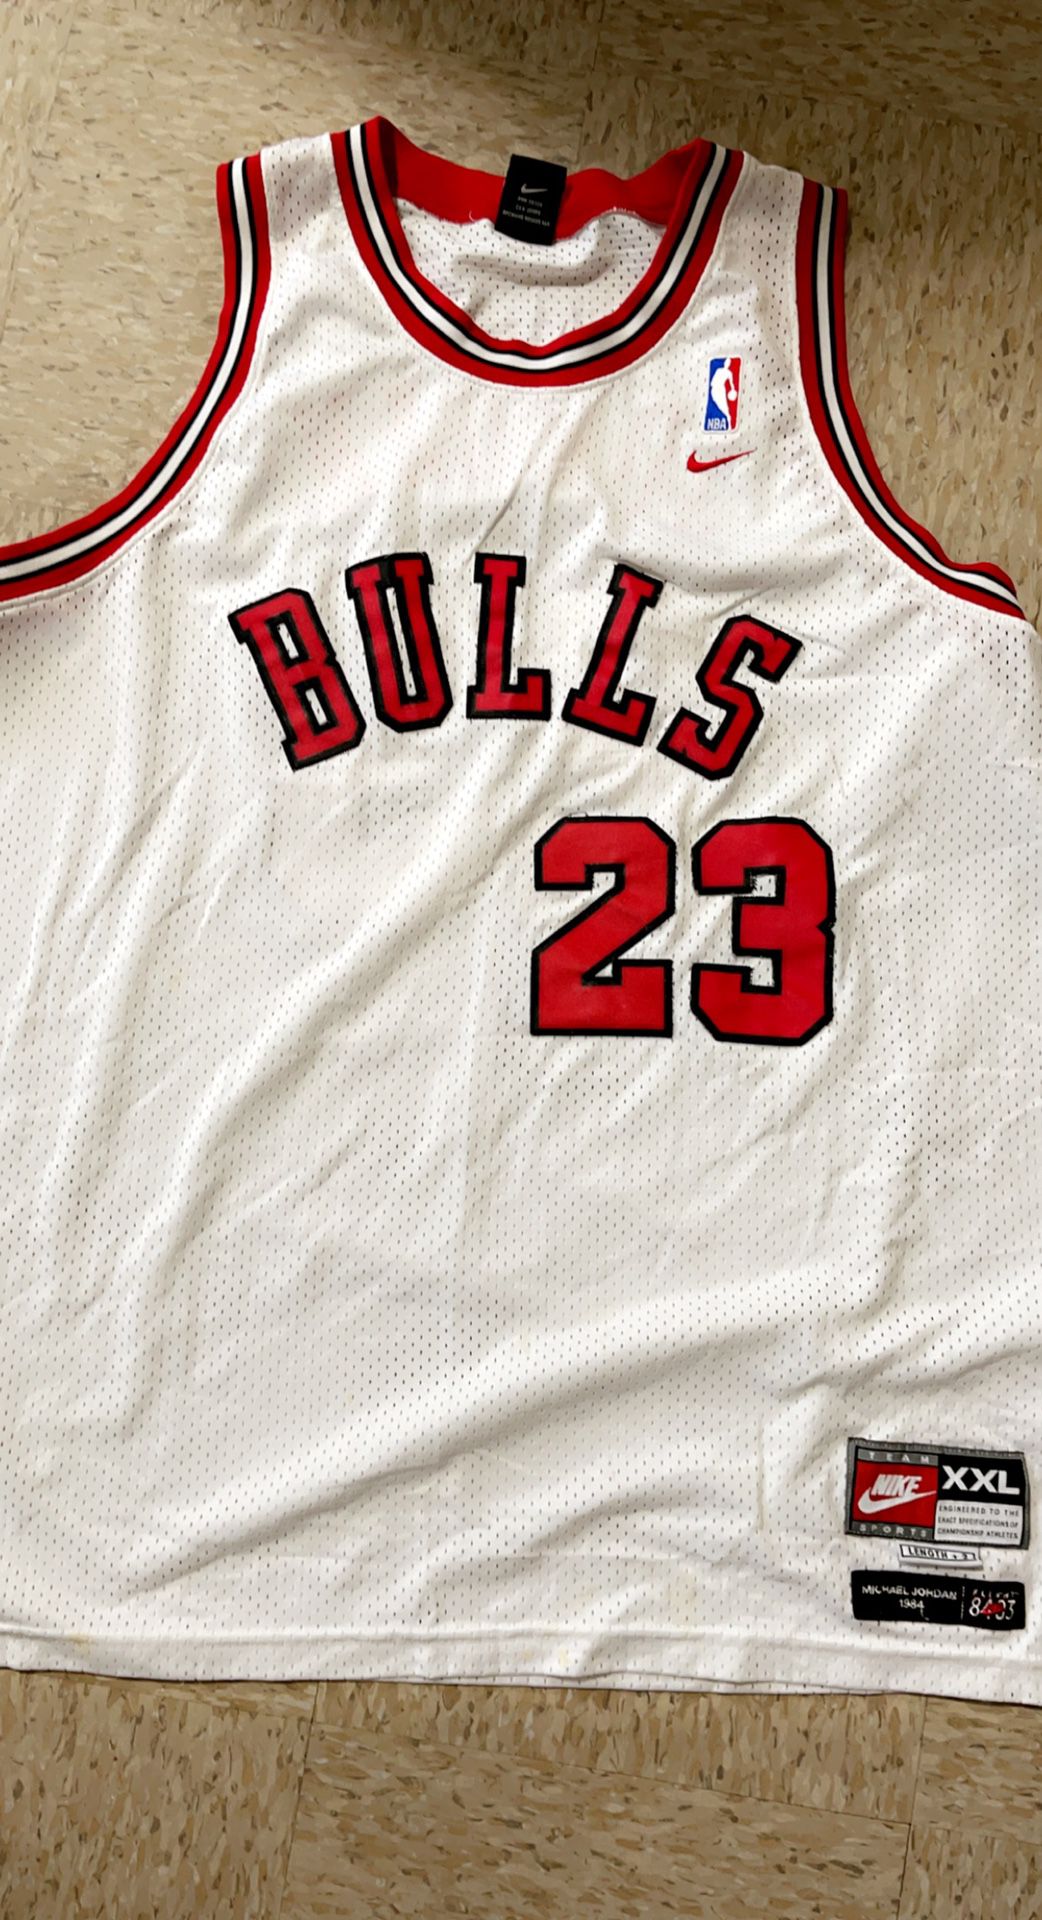 Michael Jordan Washington Bullets Jersey for Sale in Los Angeles, CA -  OfferUp